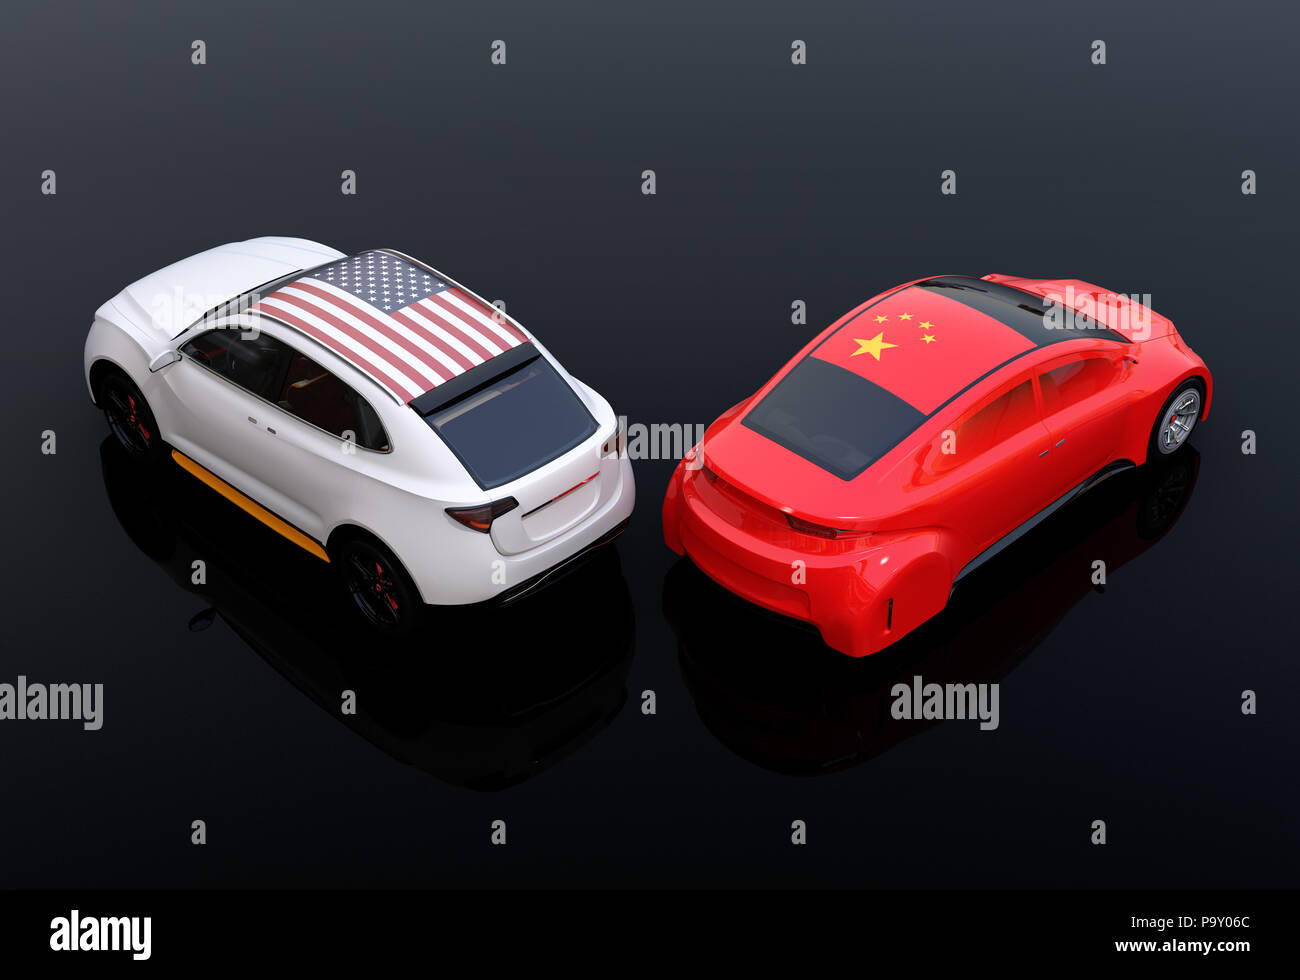 Zwei Autos mit China und US-Flaggen auf der Haube. schwarzen Hintergrund. China USA Handelskrieg, Amerikanische Tarife Konzept. 3D-Bild. Stockfoto